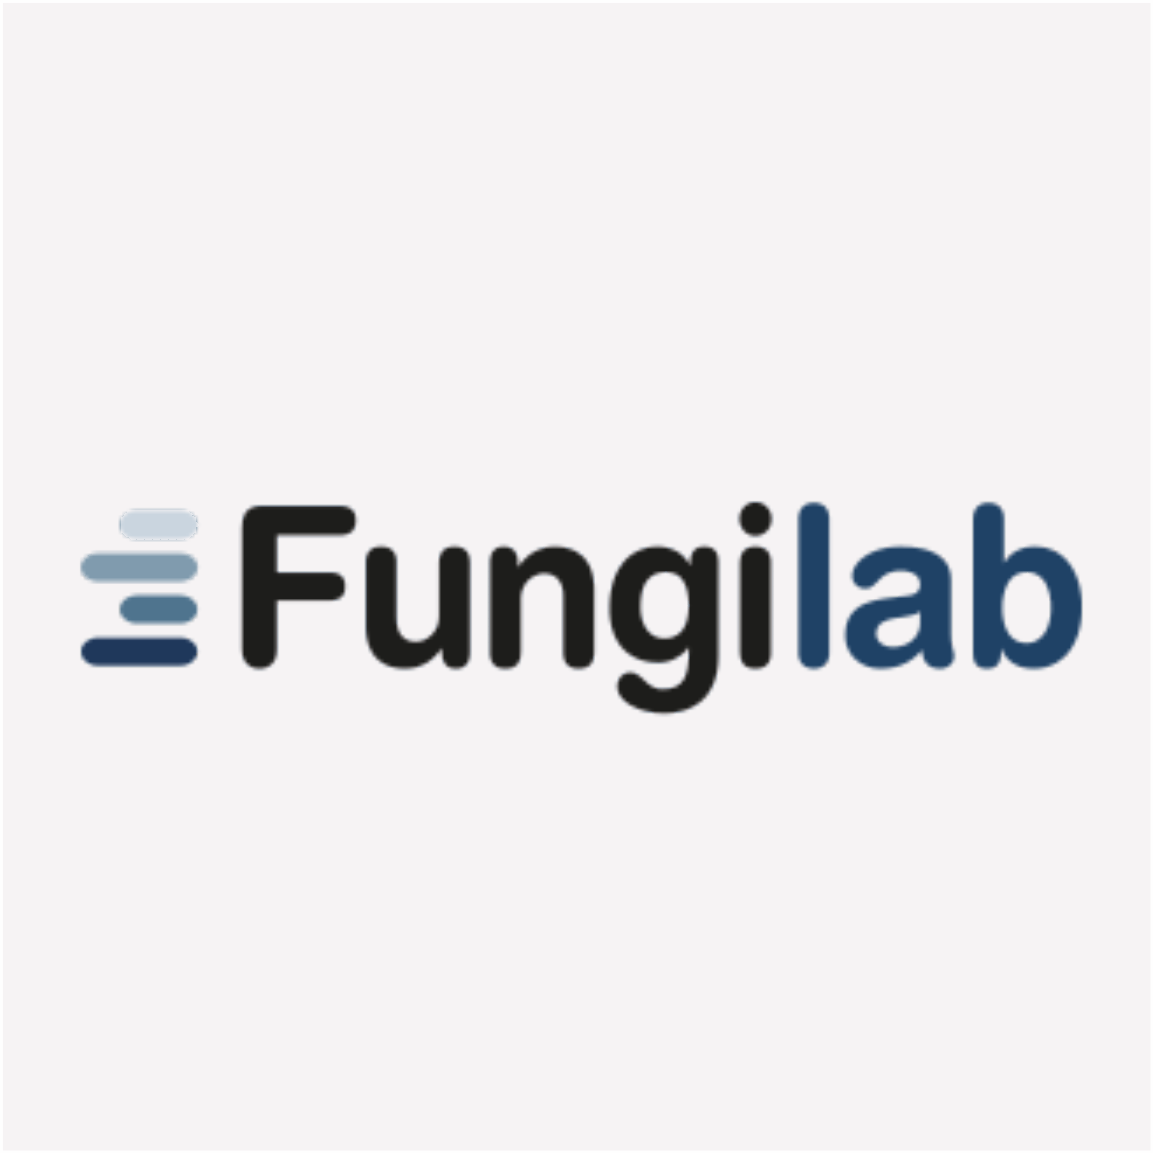 fungilab_logo